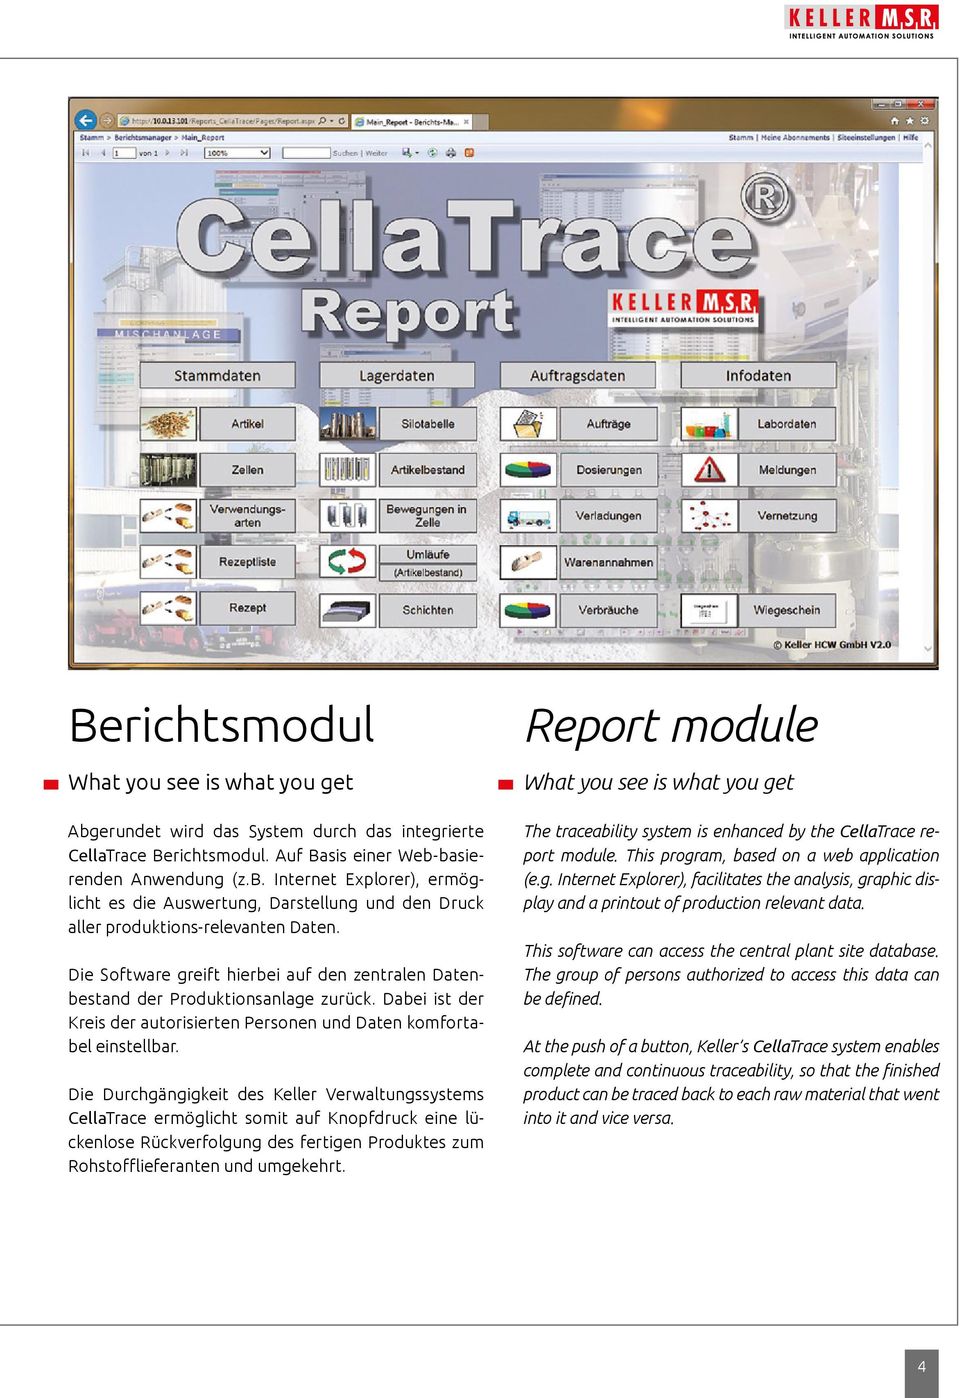 Die Durchgängigkeit des Keller Verwaltungssystems CellaTrace ermöglicht somit auf Knopfdruck eine lückenlose Rückverfolgung des fertigen Produktes zum Rohstofflieferanten und umgekehrt.